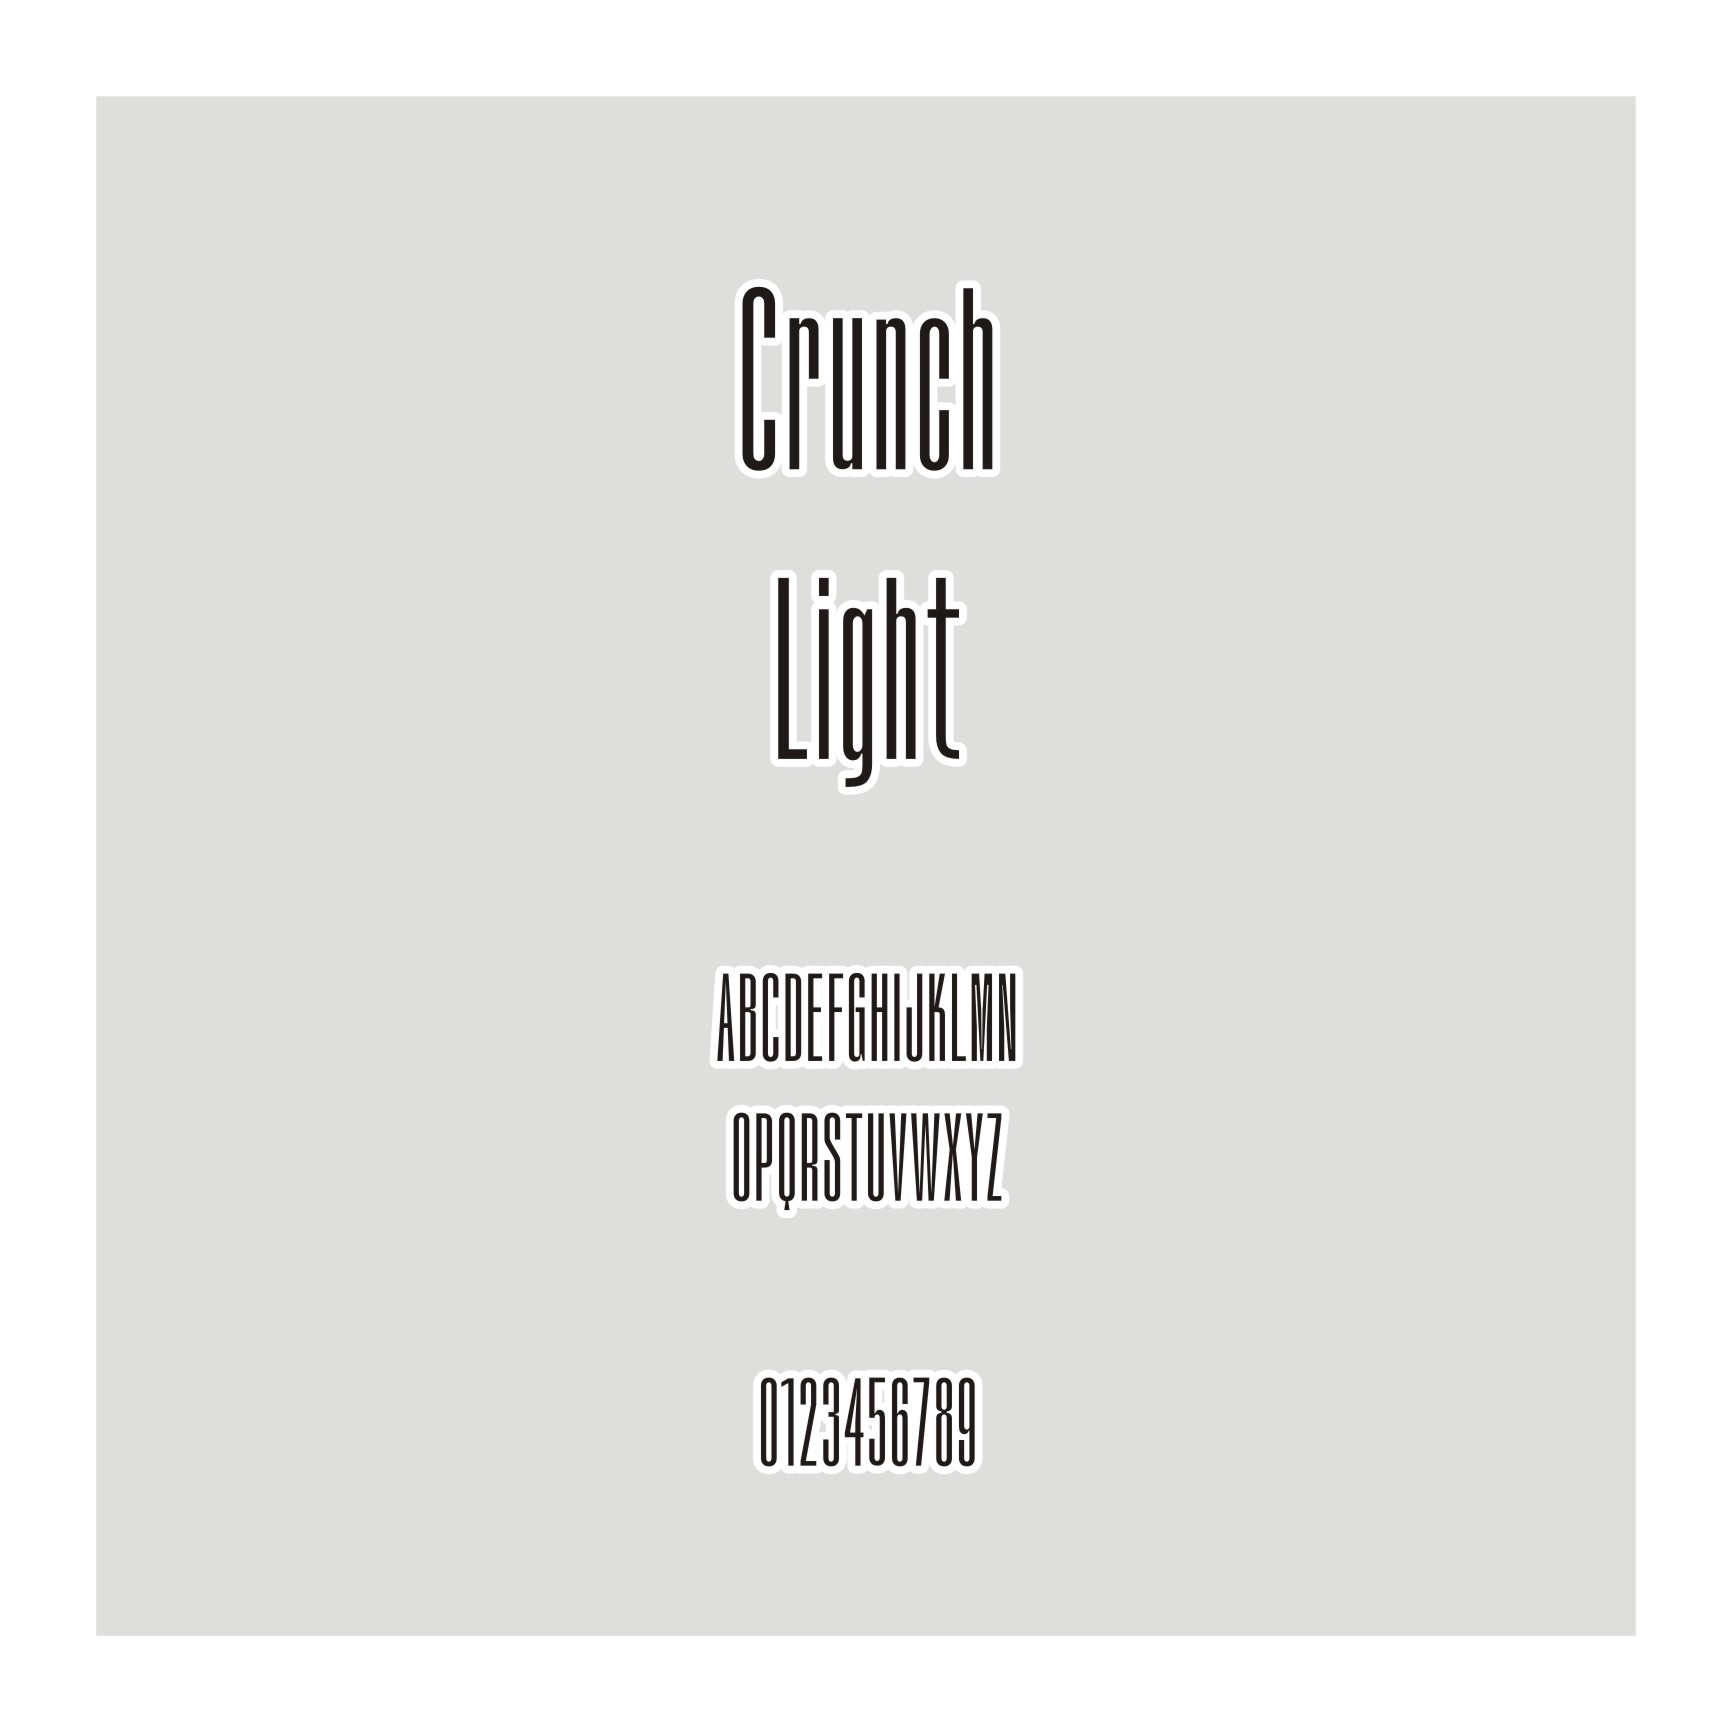 Crunch Light